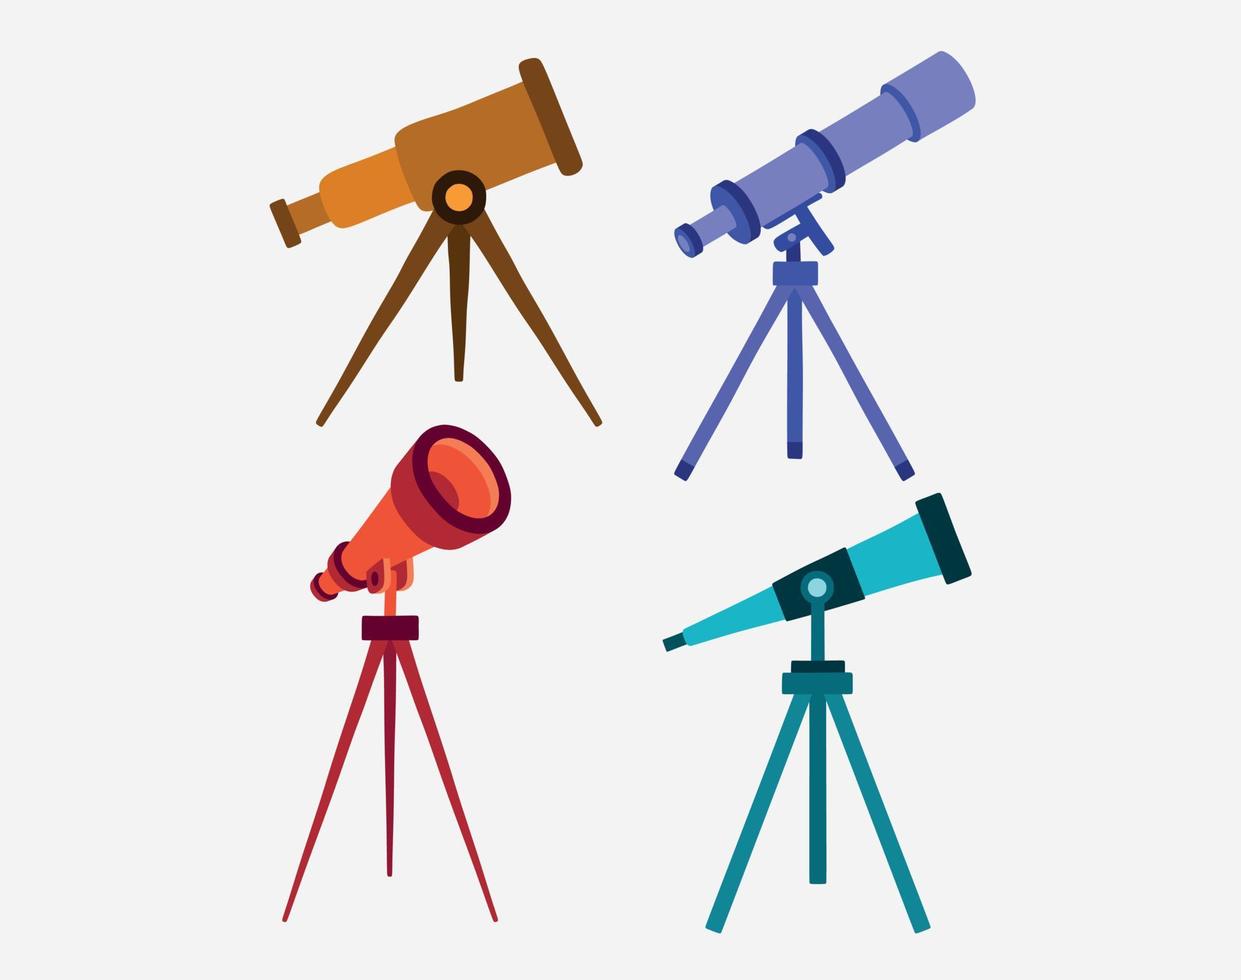 immagine a colori del telescopio dei cartoni animati. vettore